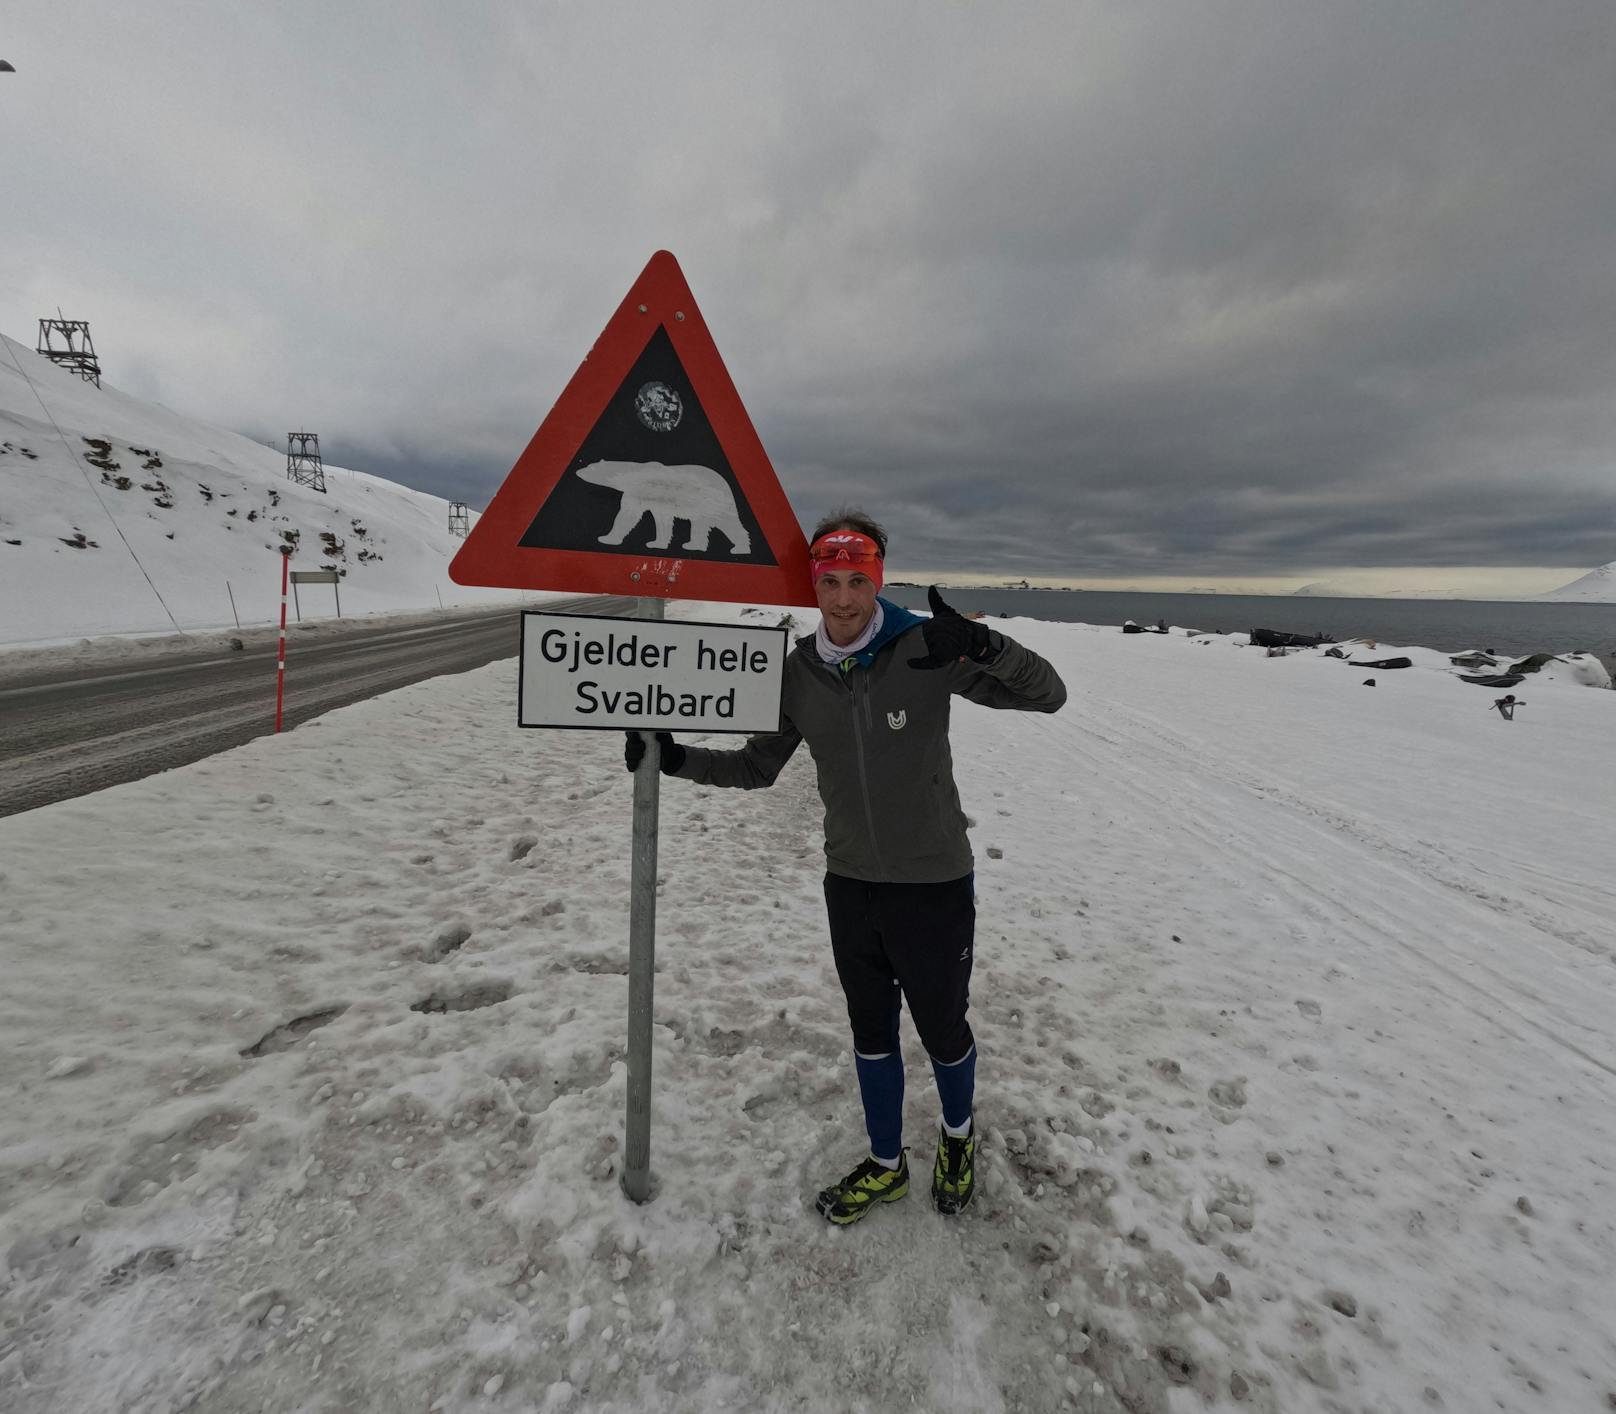 Geschafft! Predl mit 100-Kilometer-Lauf auf Spitzbergen